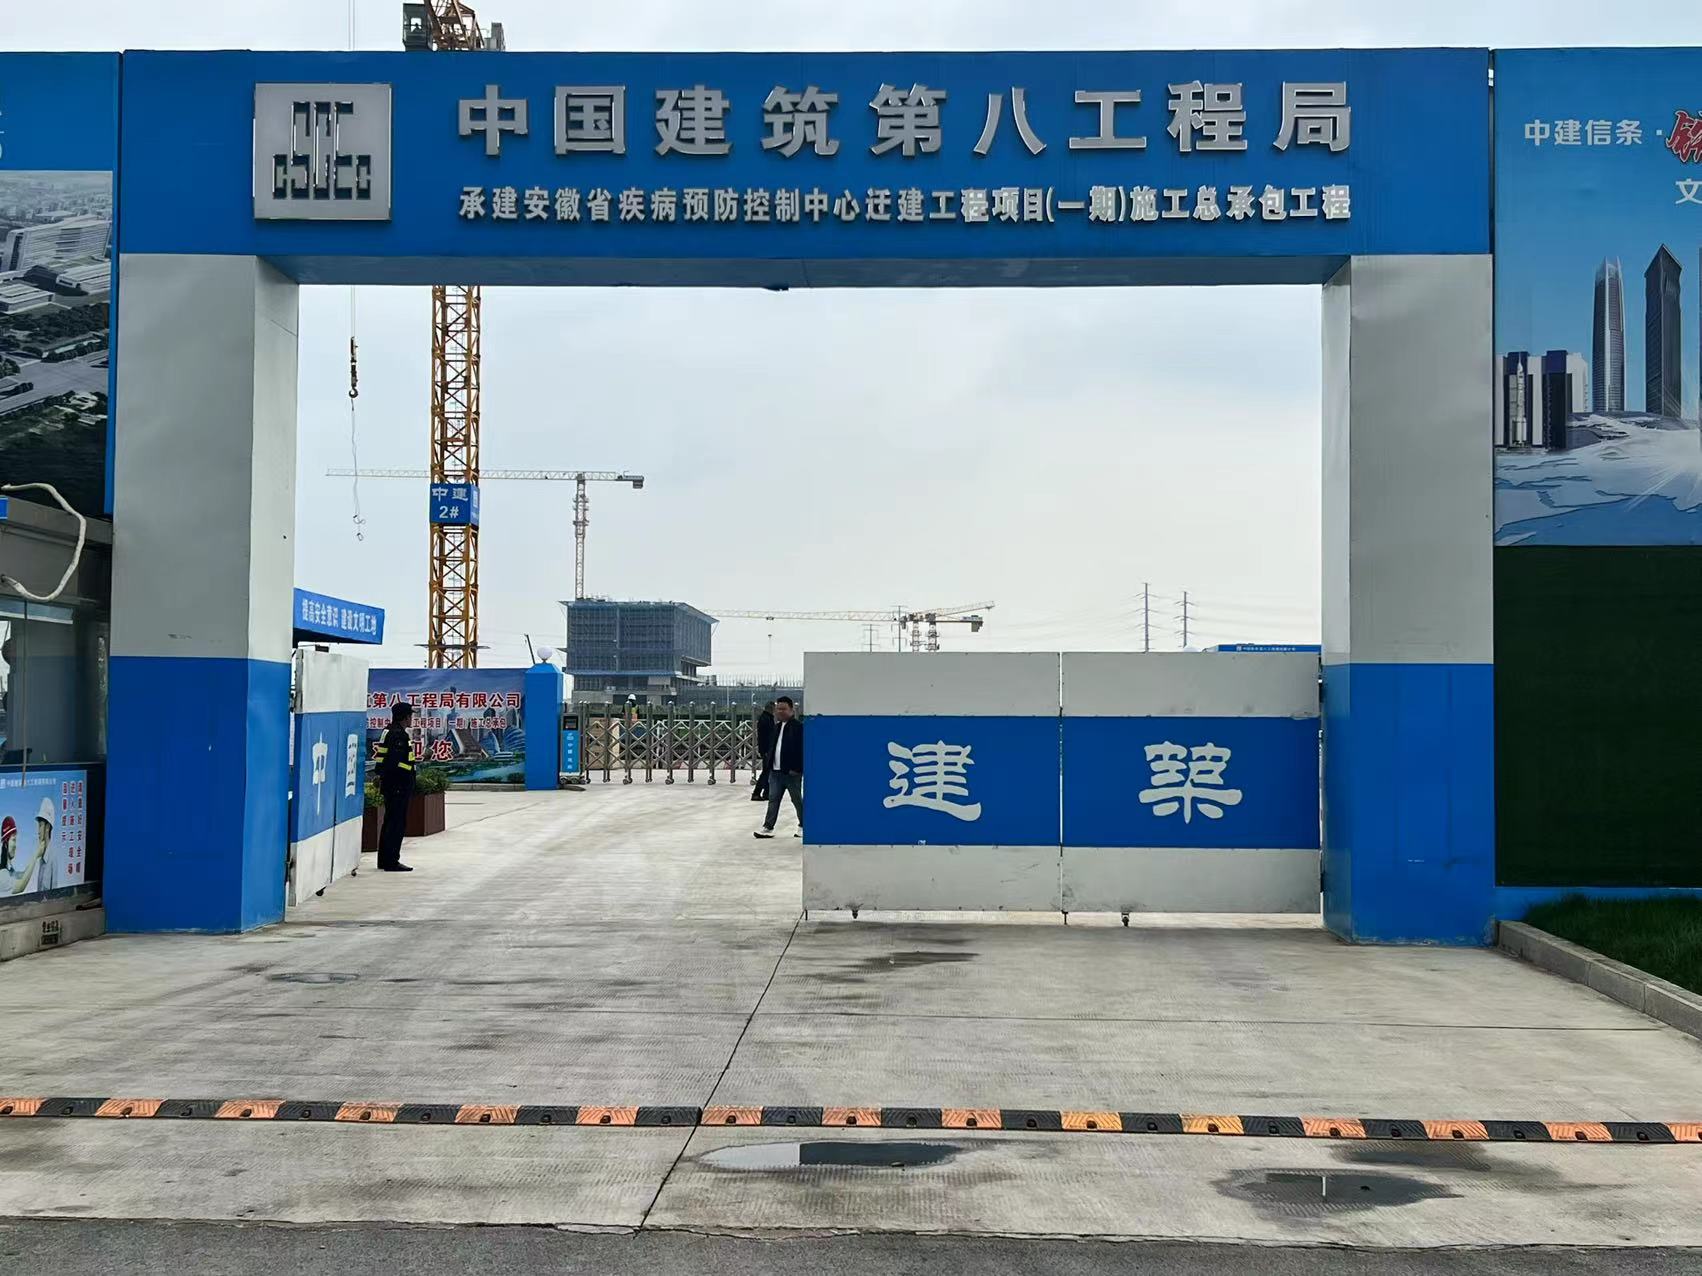 安庆安徽省预防疾病控制中心